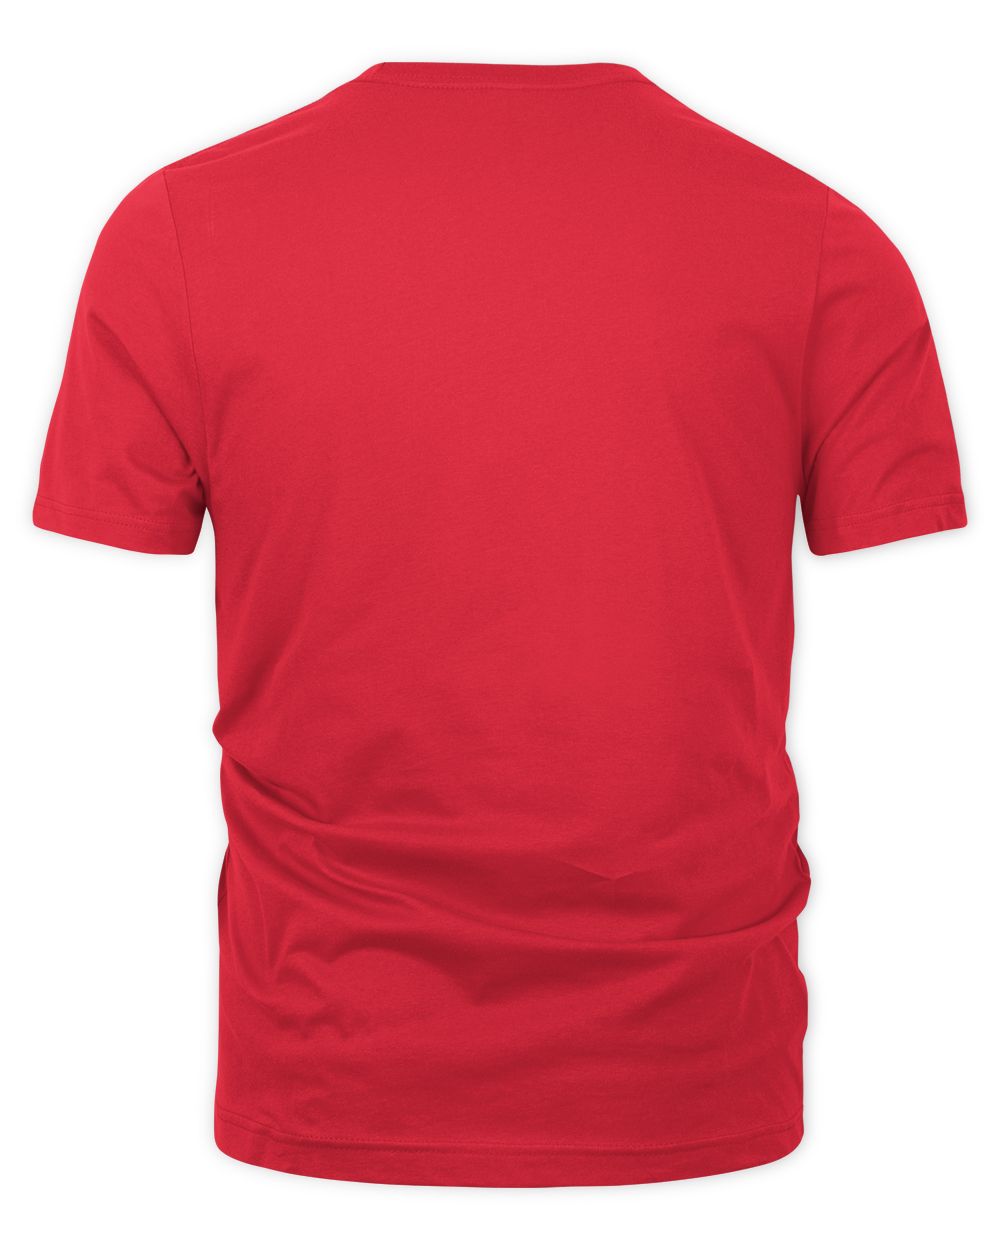 Taco Bell Merch Sign Shirt Unisex Premium T-Shirt red 